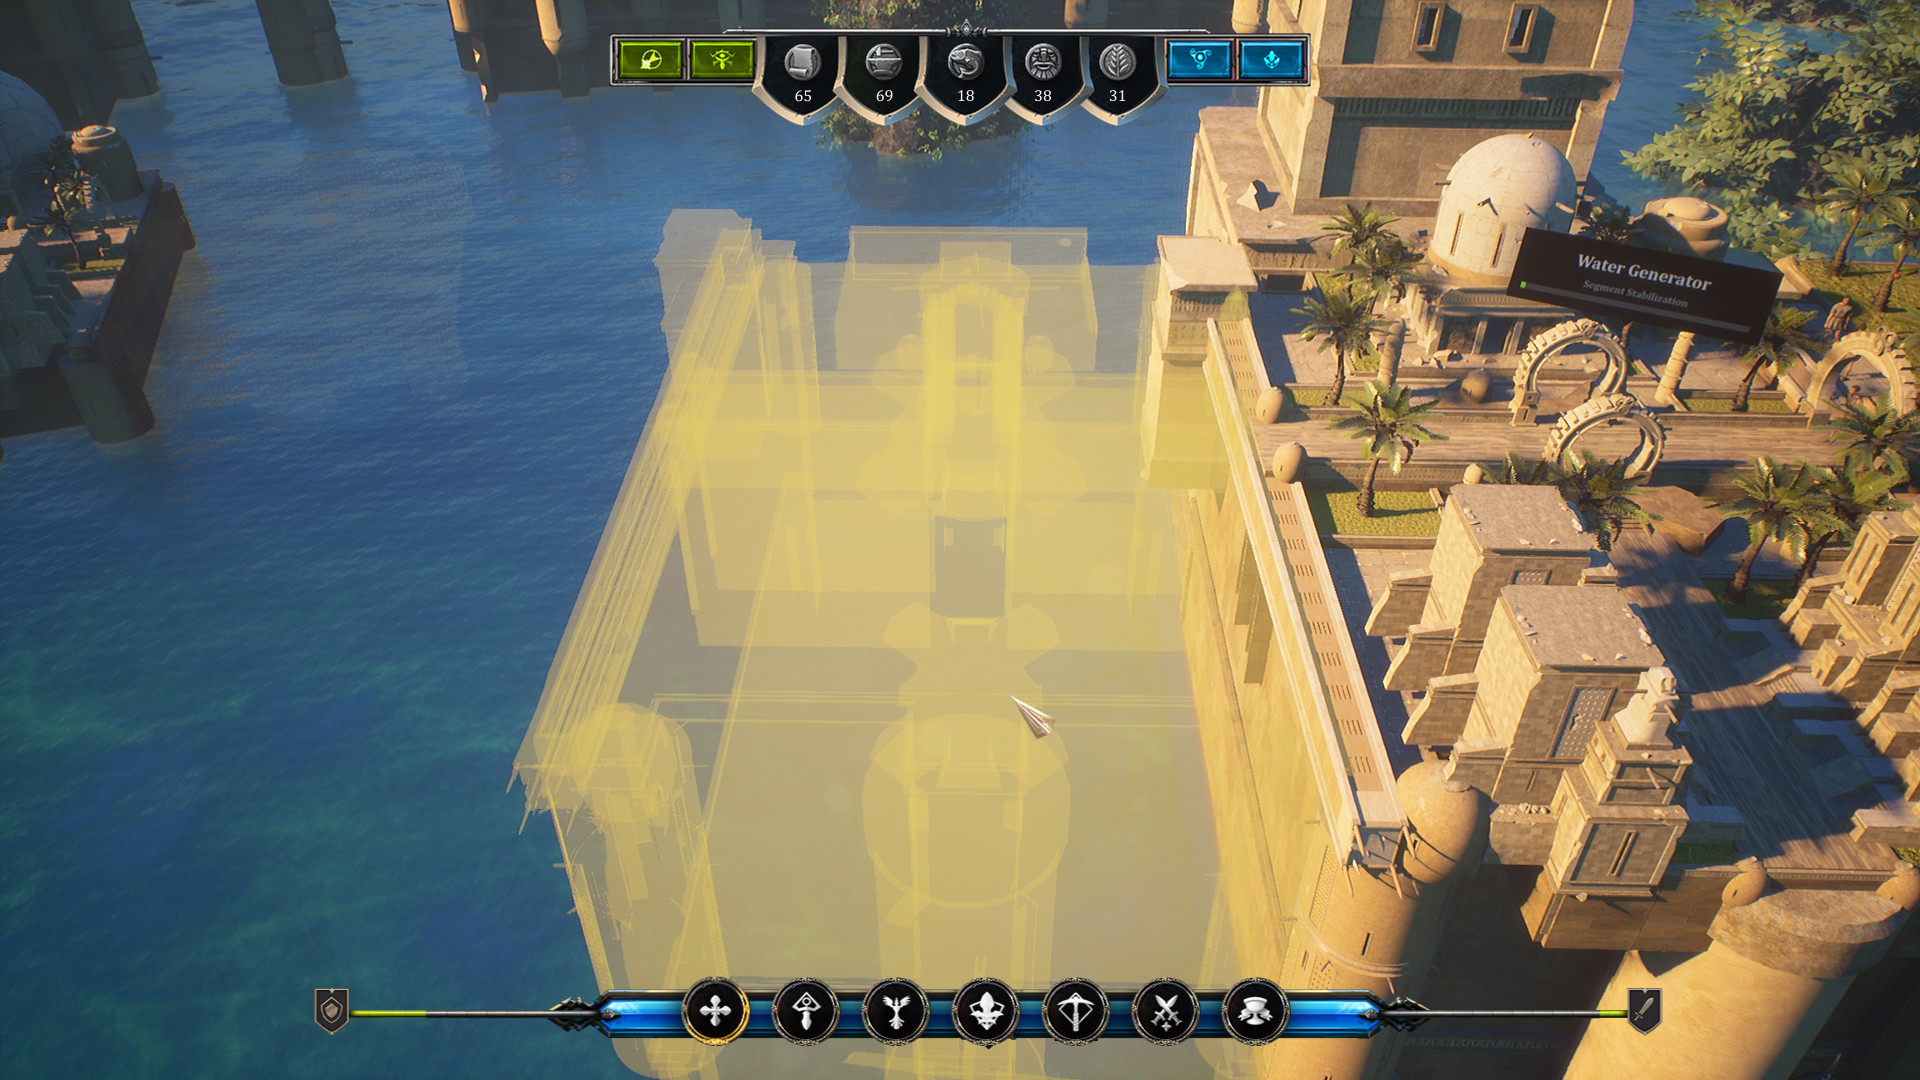 Atlantis обзор